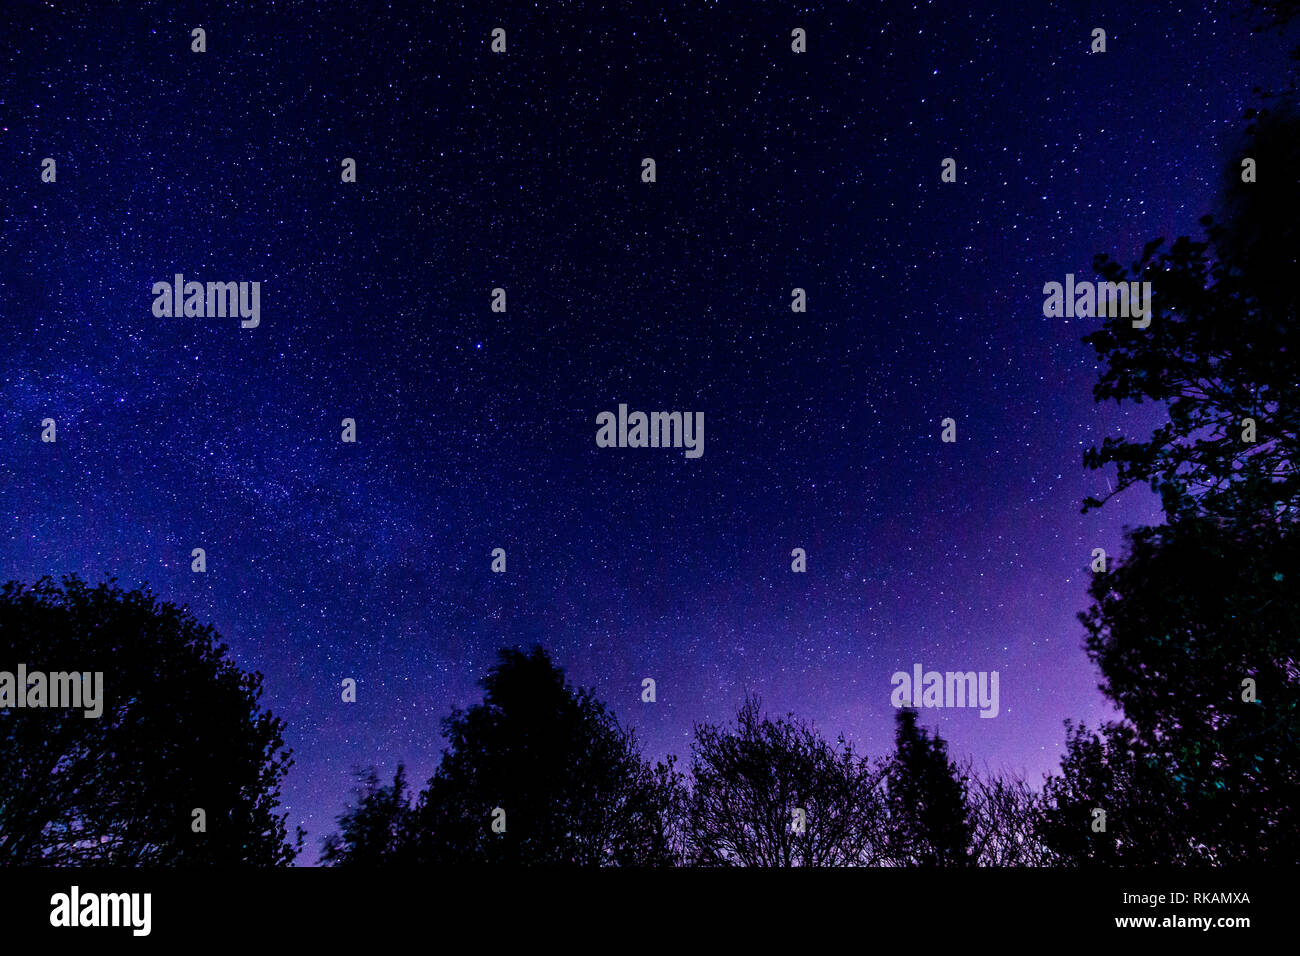 Bella di notte immagini e fotografie stock ad alta risoluzione - Alamy